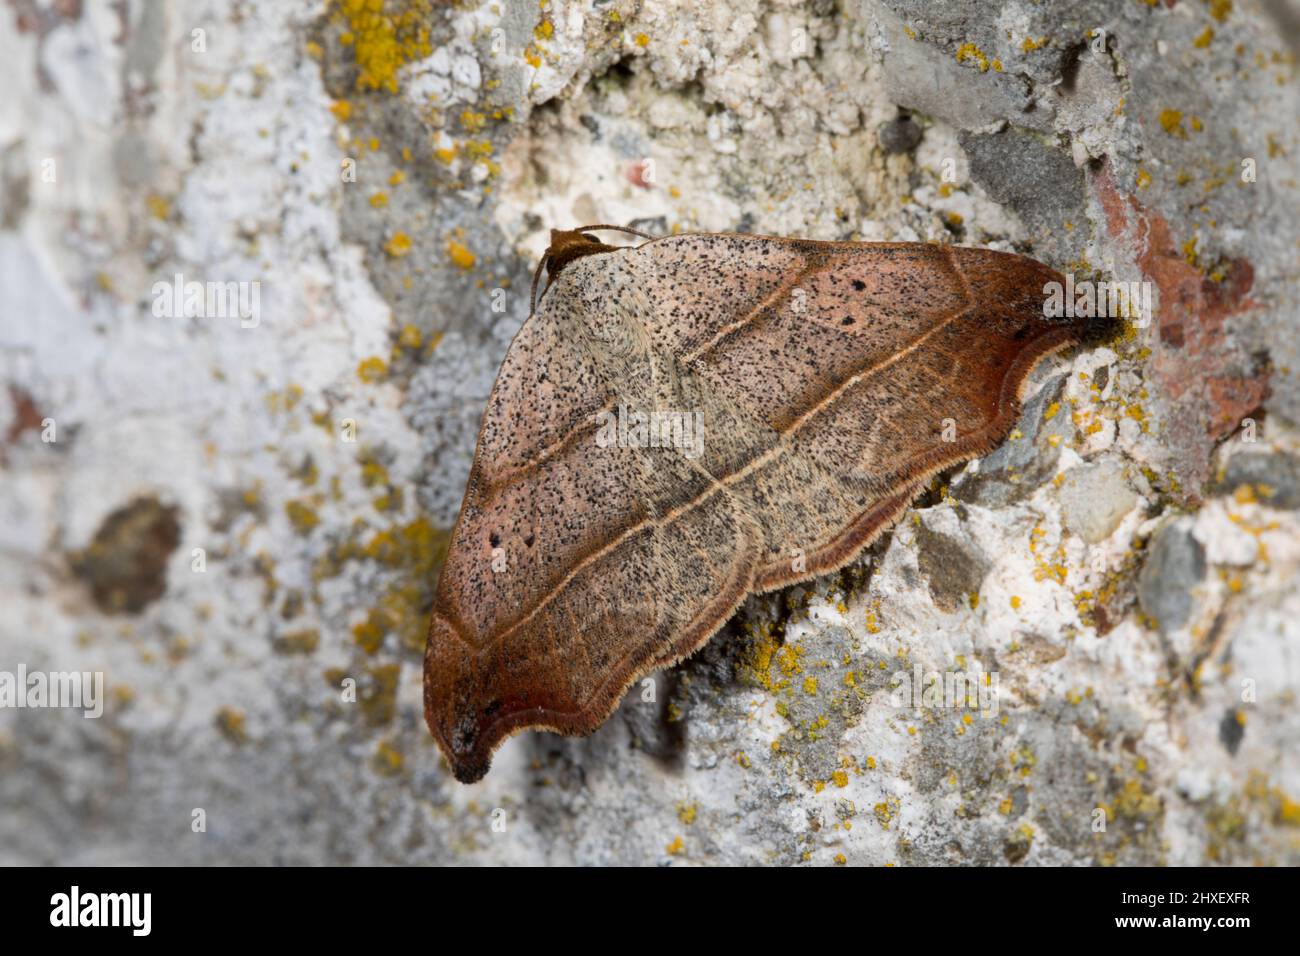 Belle pointe de crochet (Laspeyria flexula) papillon adulte reposant sur un mur. Powys, pays de Galles. Juillet. Banque D'Images